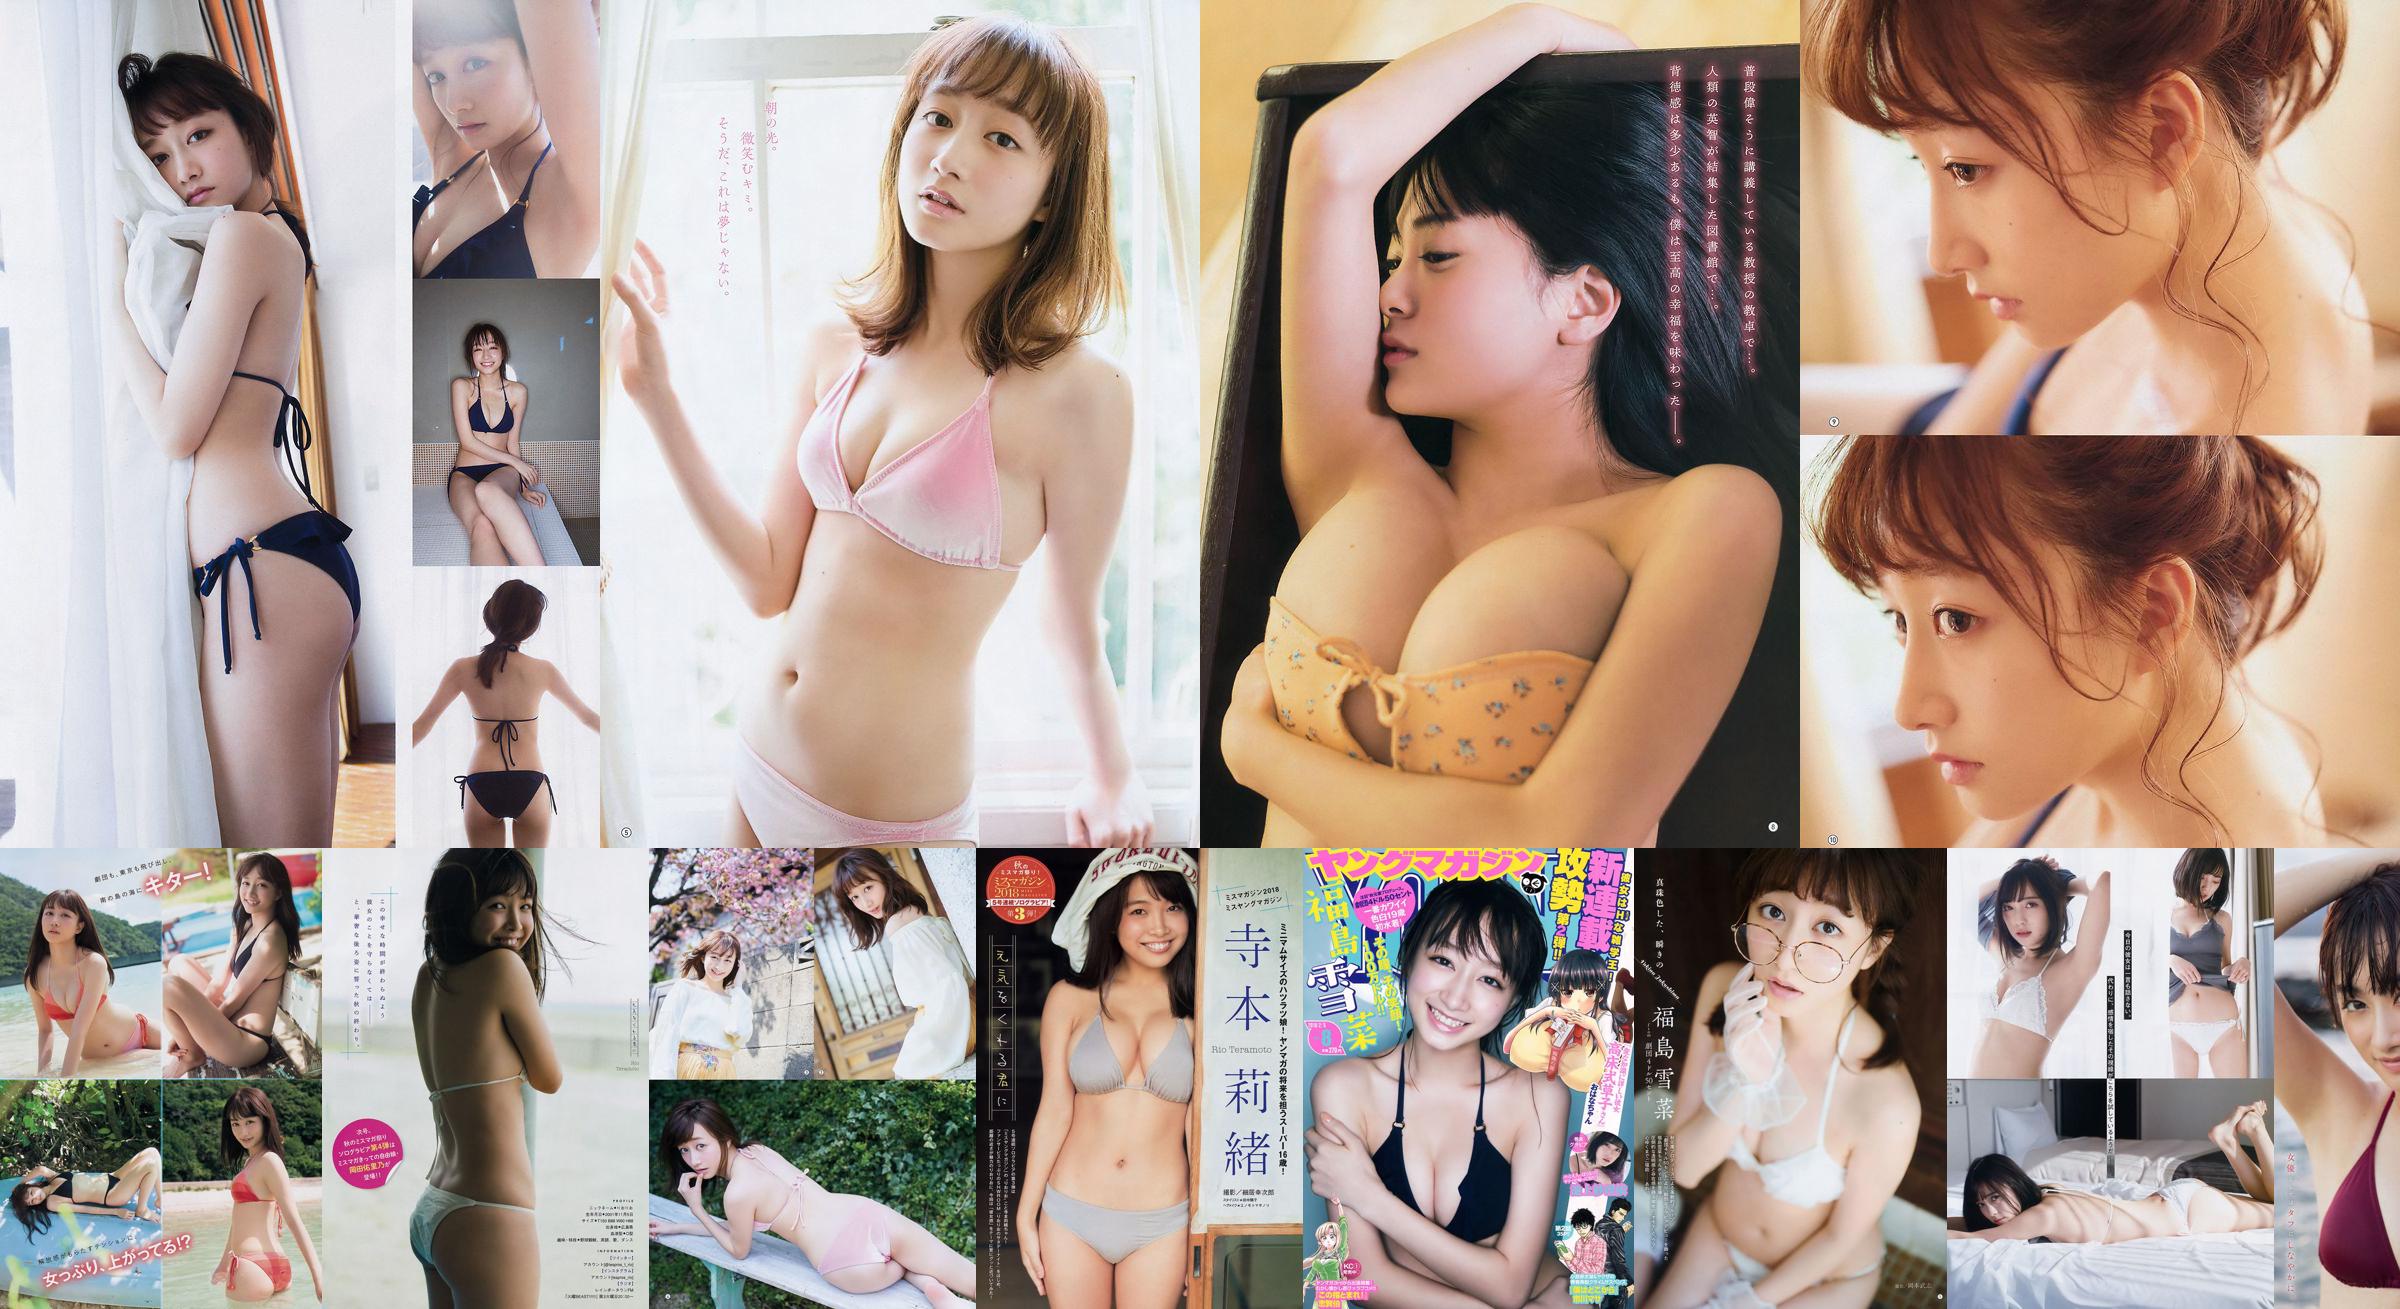 [Young Gangan] Yukina Fukushima RaMu 2018 No.10 Photograph No.eb20e4 หน้า 1